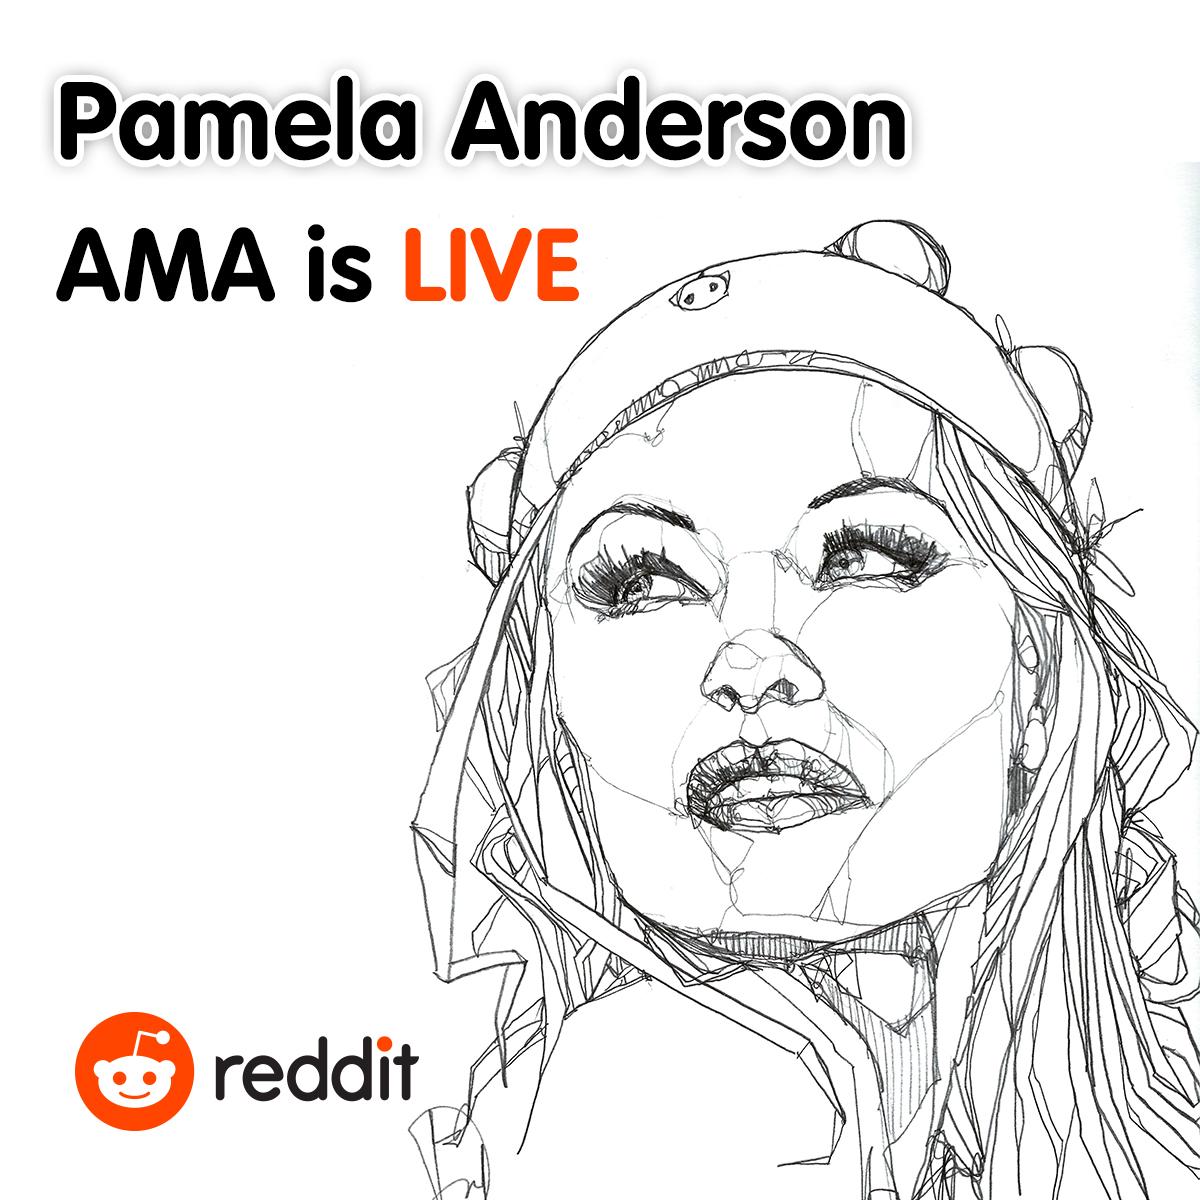 RT @reddit: Join @pamfoundation for her @reddit_AMA live now: http://t.co/LAJfKiOiLE http://t.co/BENLnYHF9R